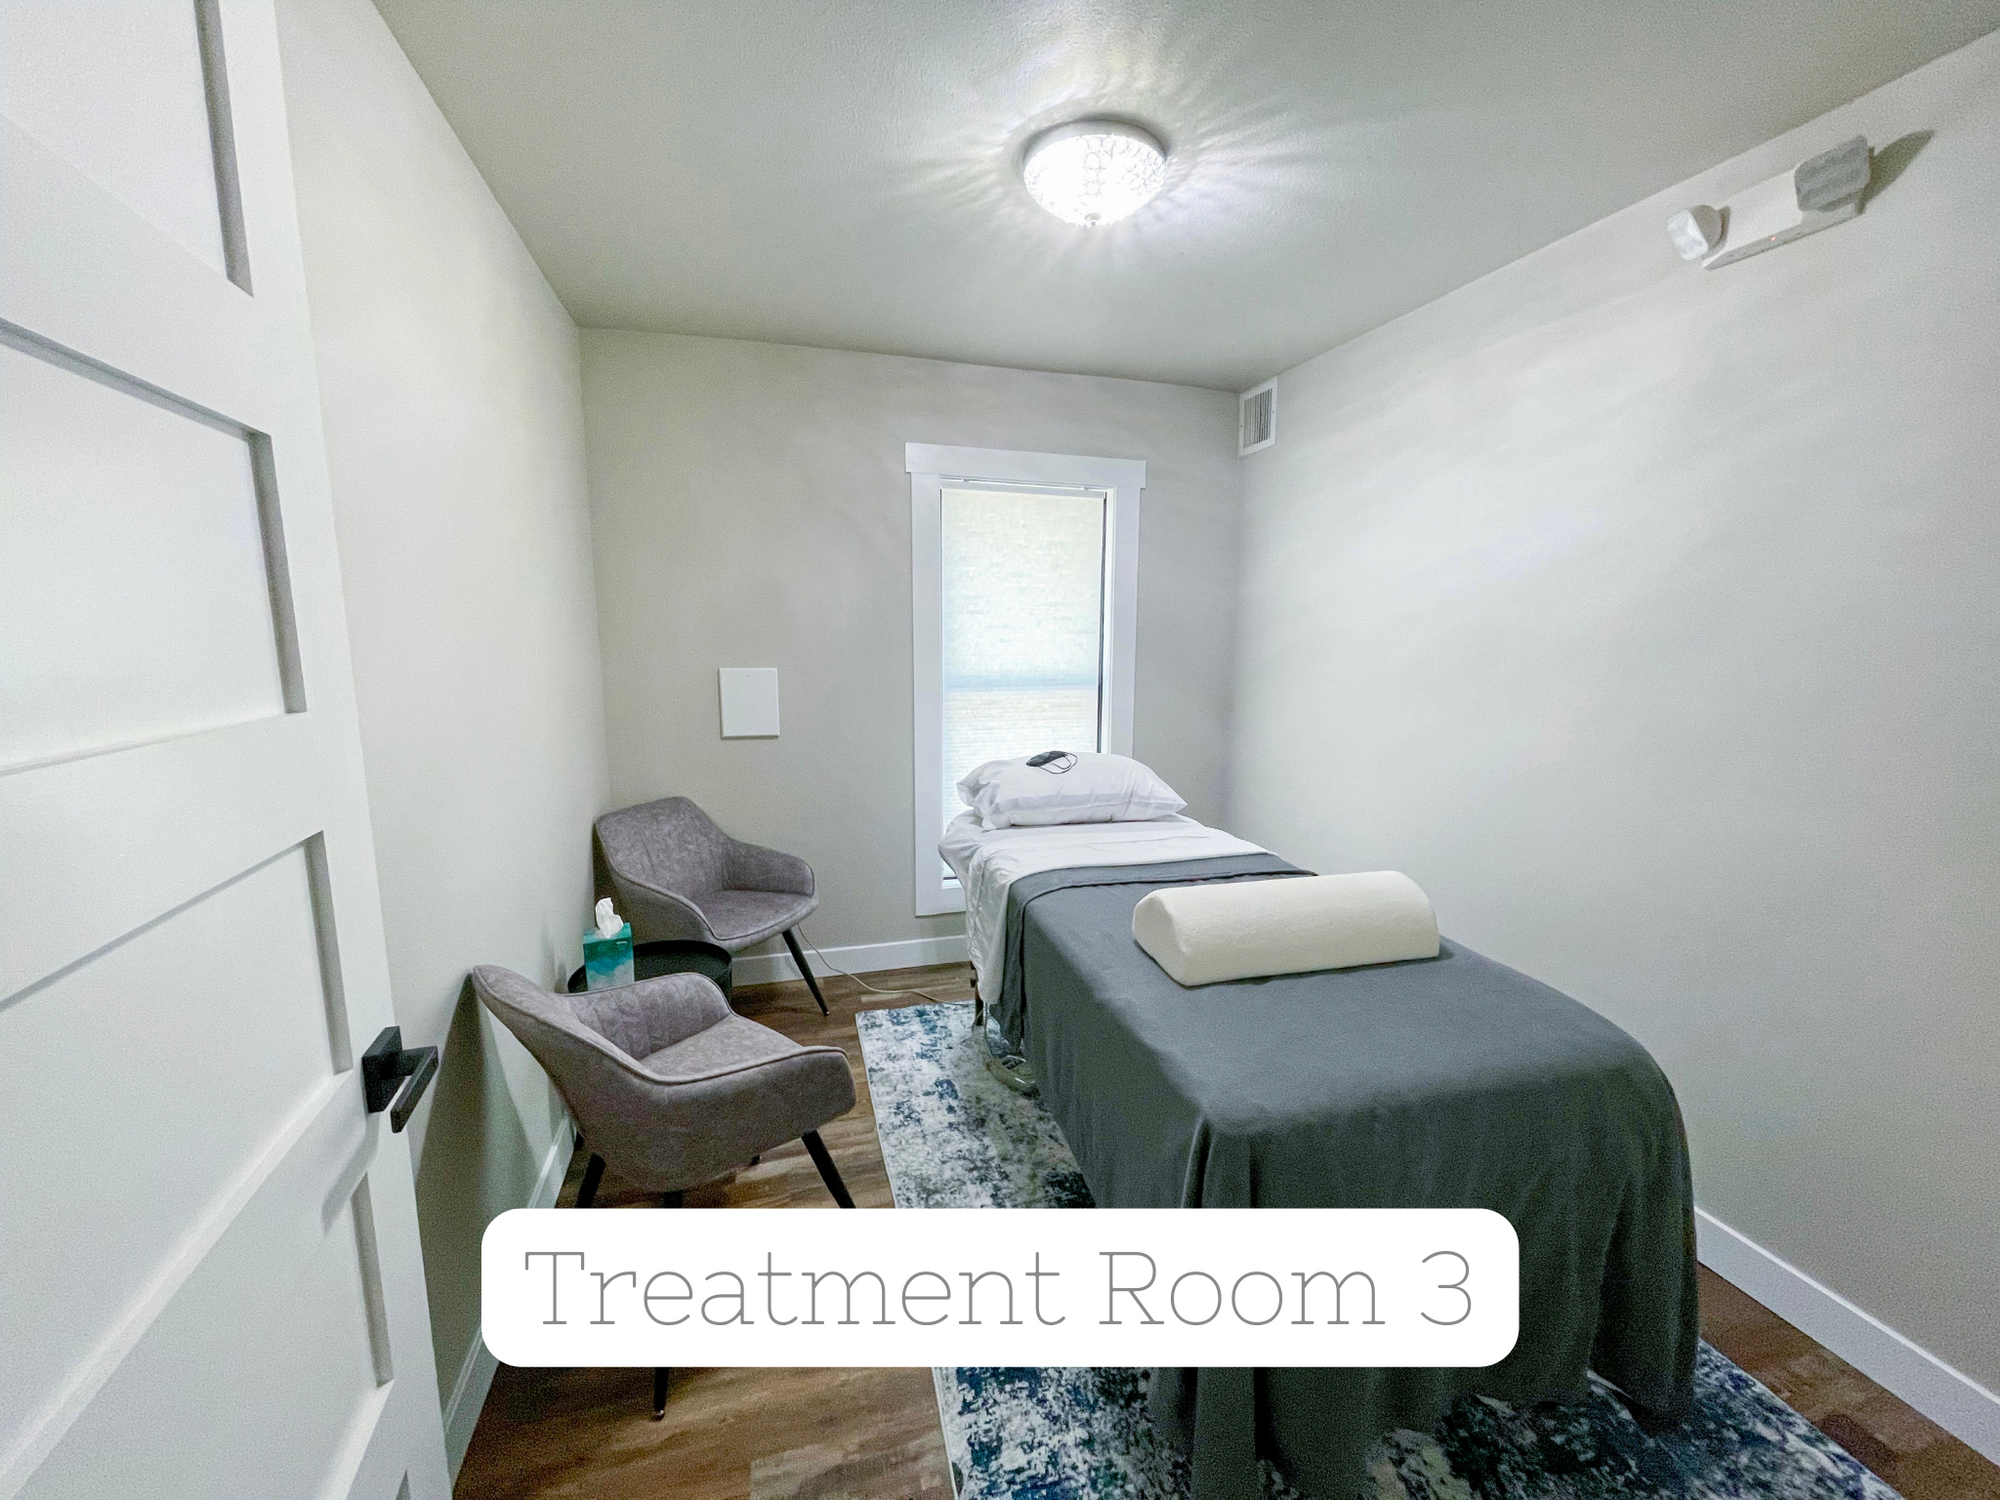 Weekend Treatment Room Rental - Room 3